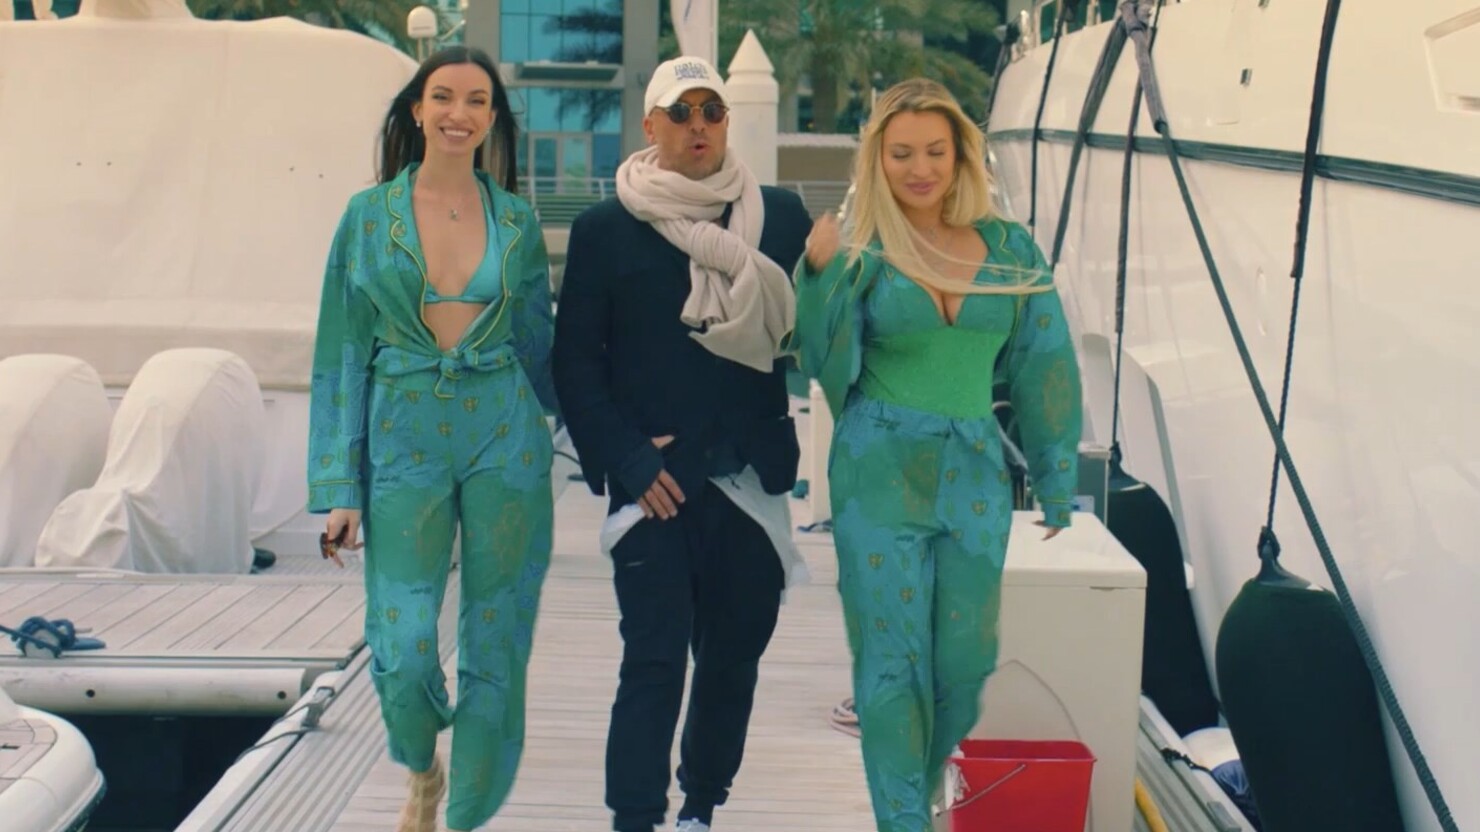 Дубай, яхты, дорогие женщины и фирменный юмор Сарика Андреасяна — трейлер сериала "Нагиев на каникулах"